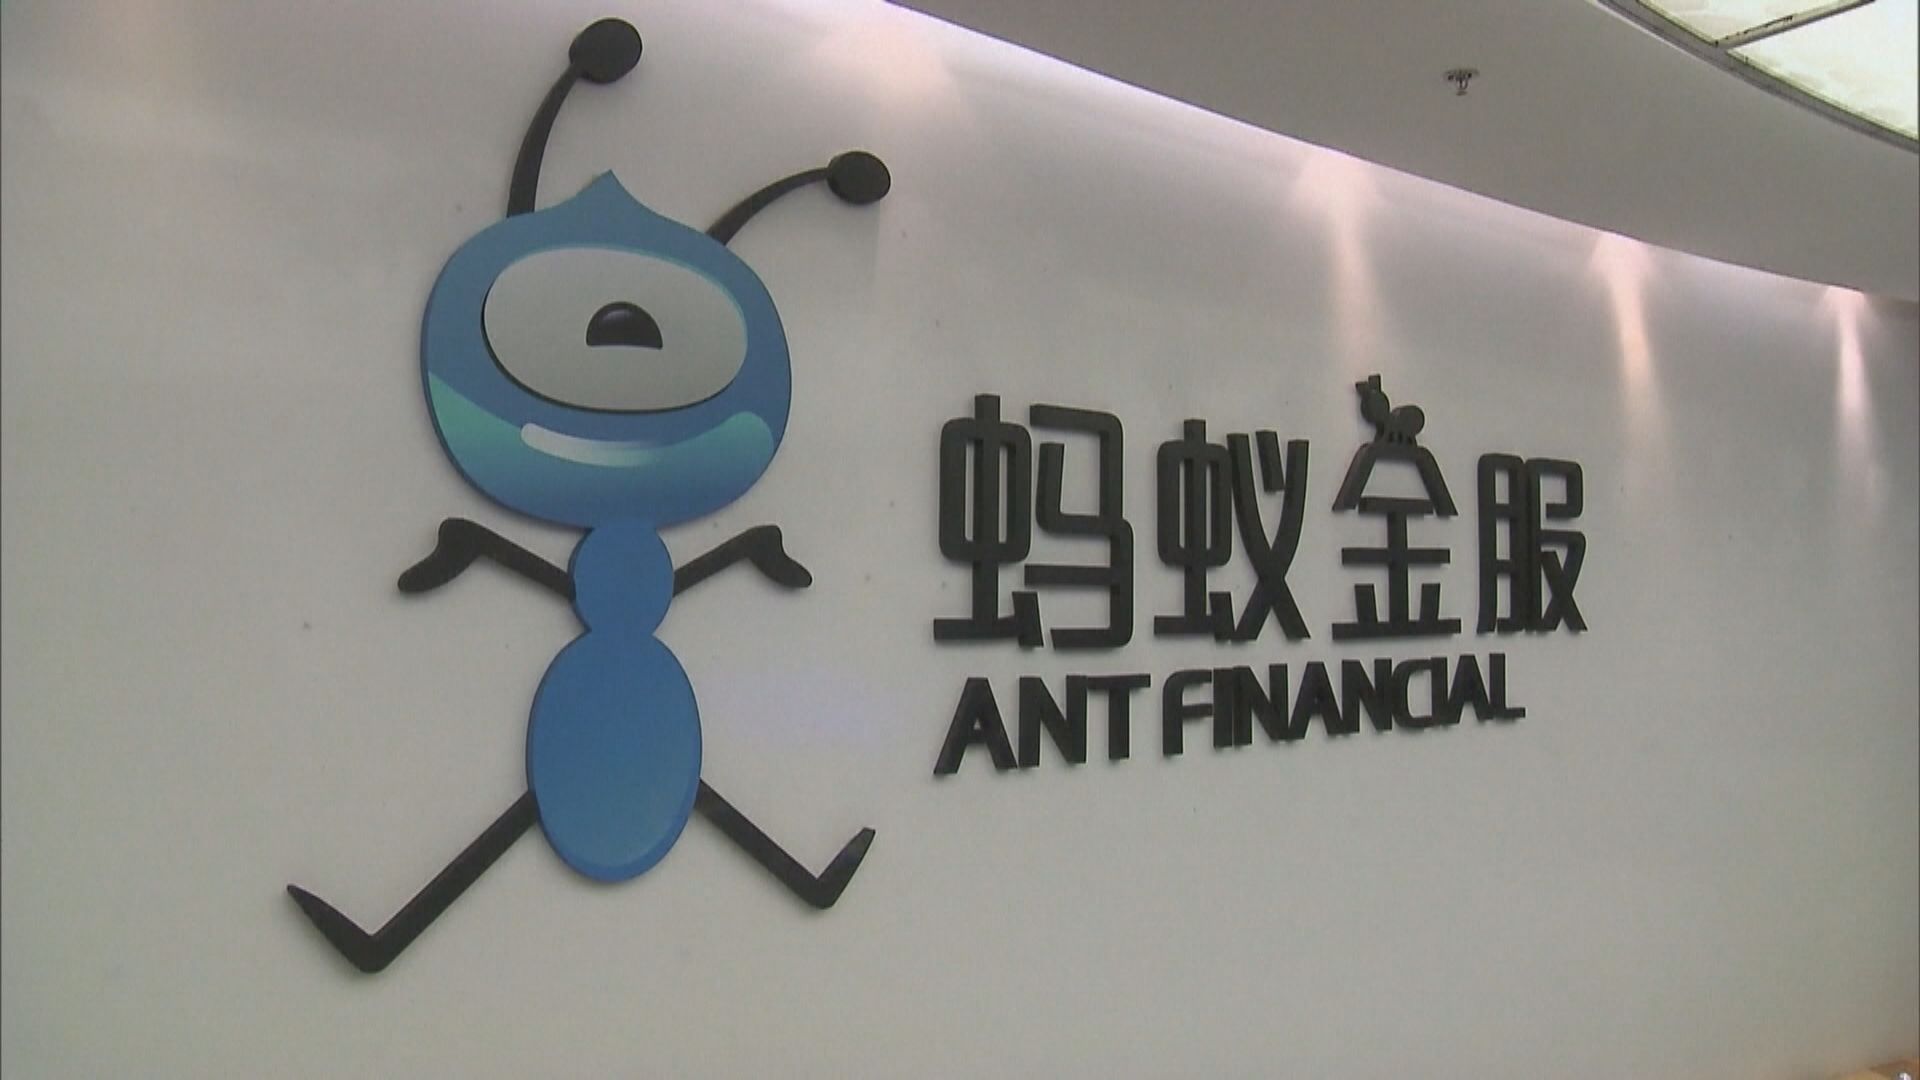 路透:螞蟻小貸業務併入消費金融部門